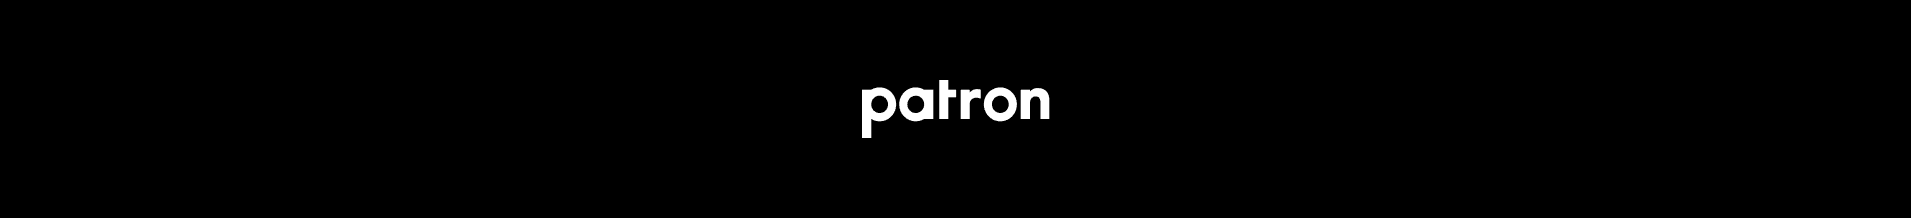 PATRON-NFT banner